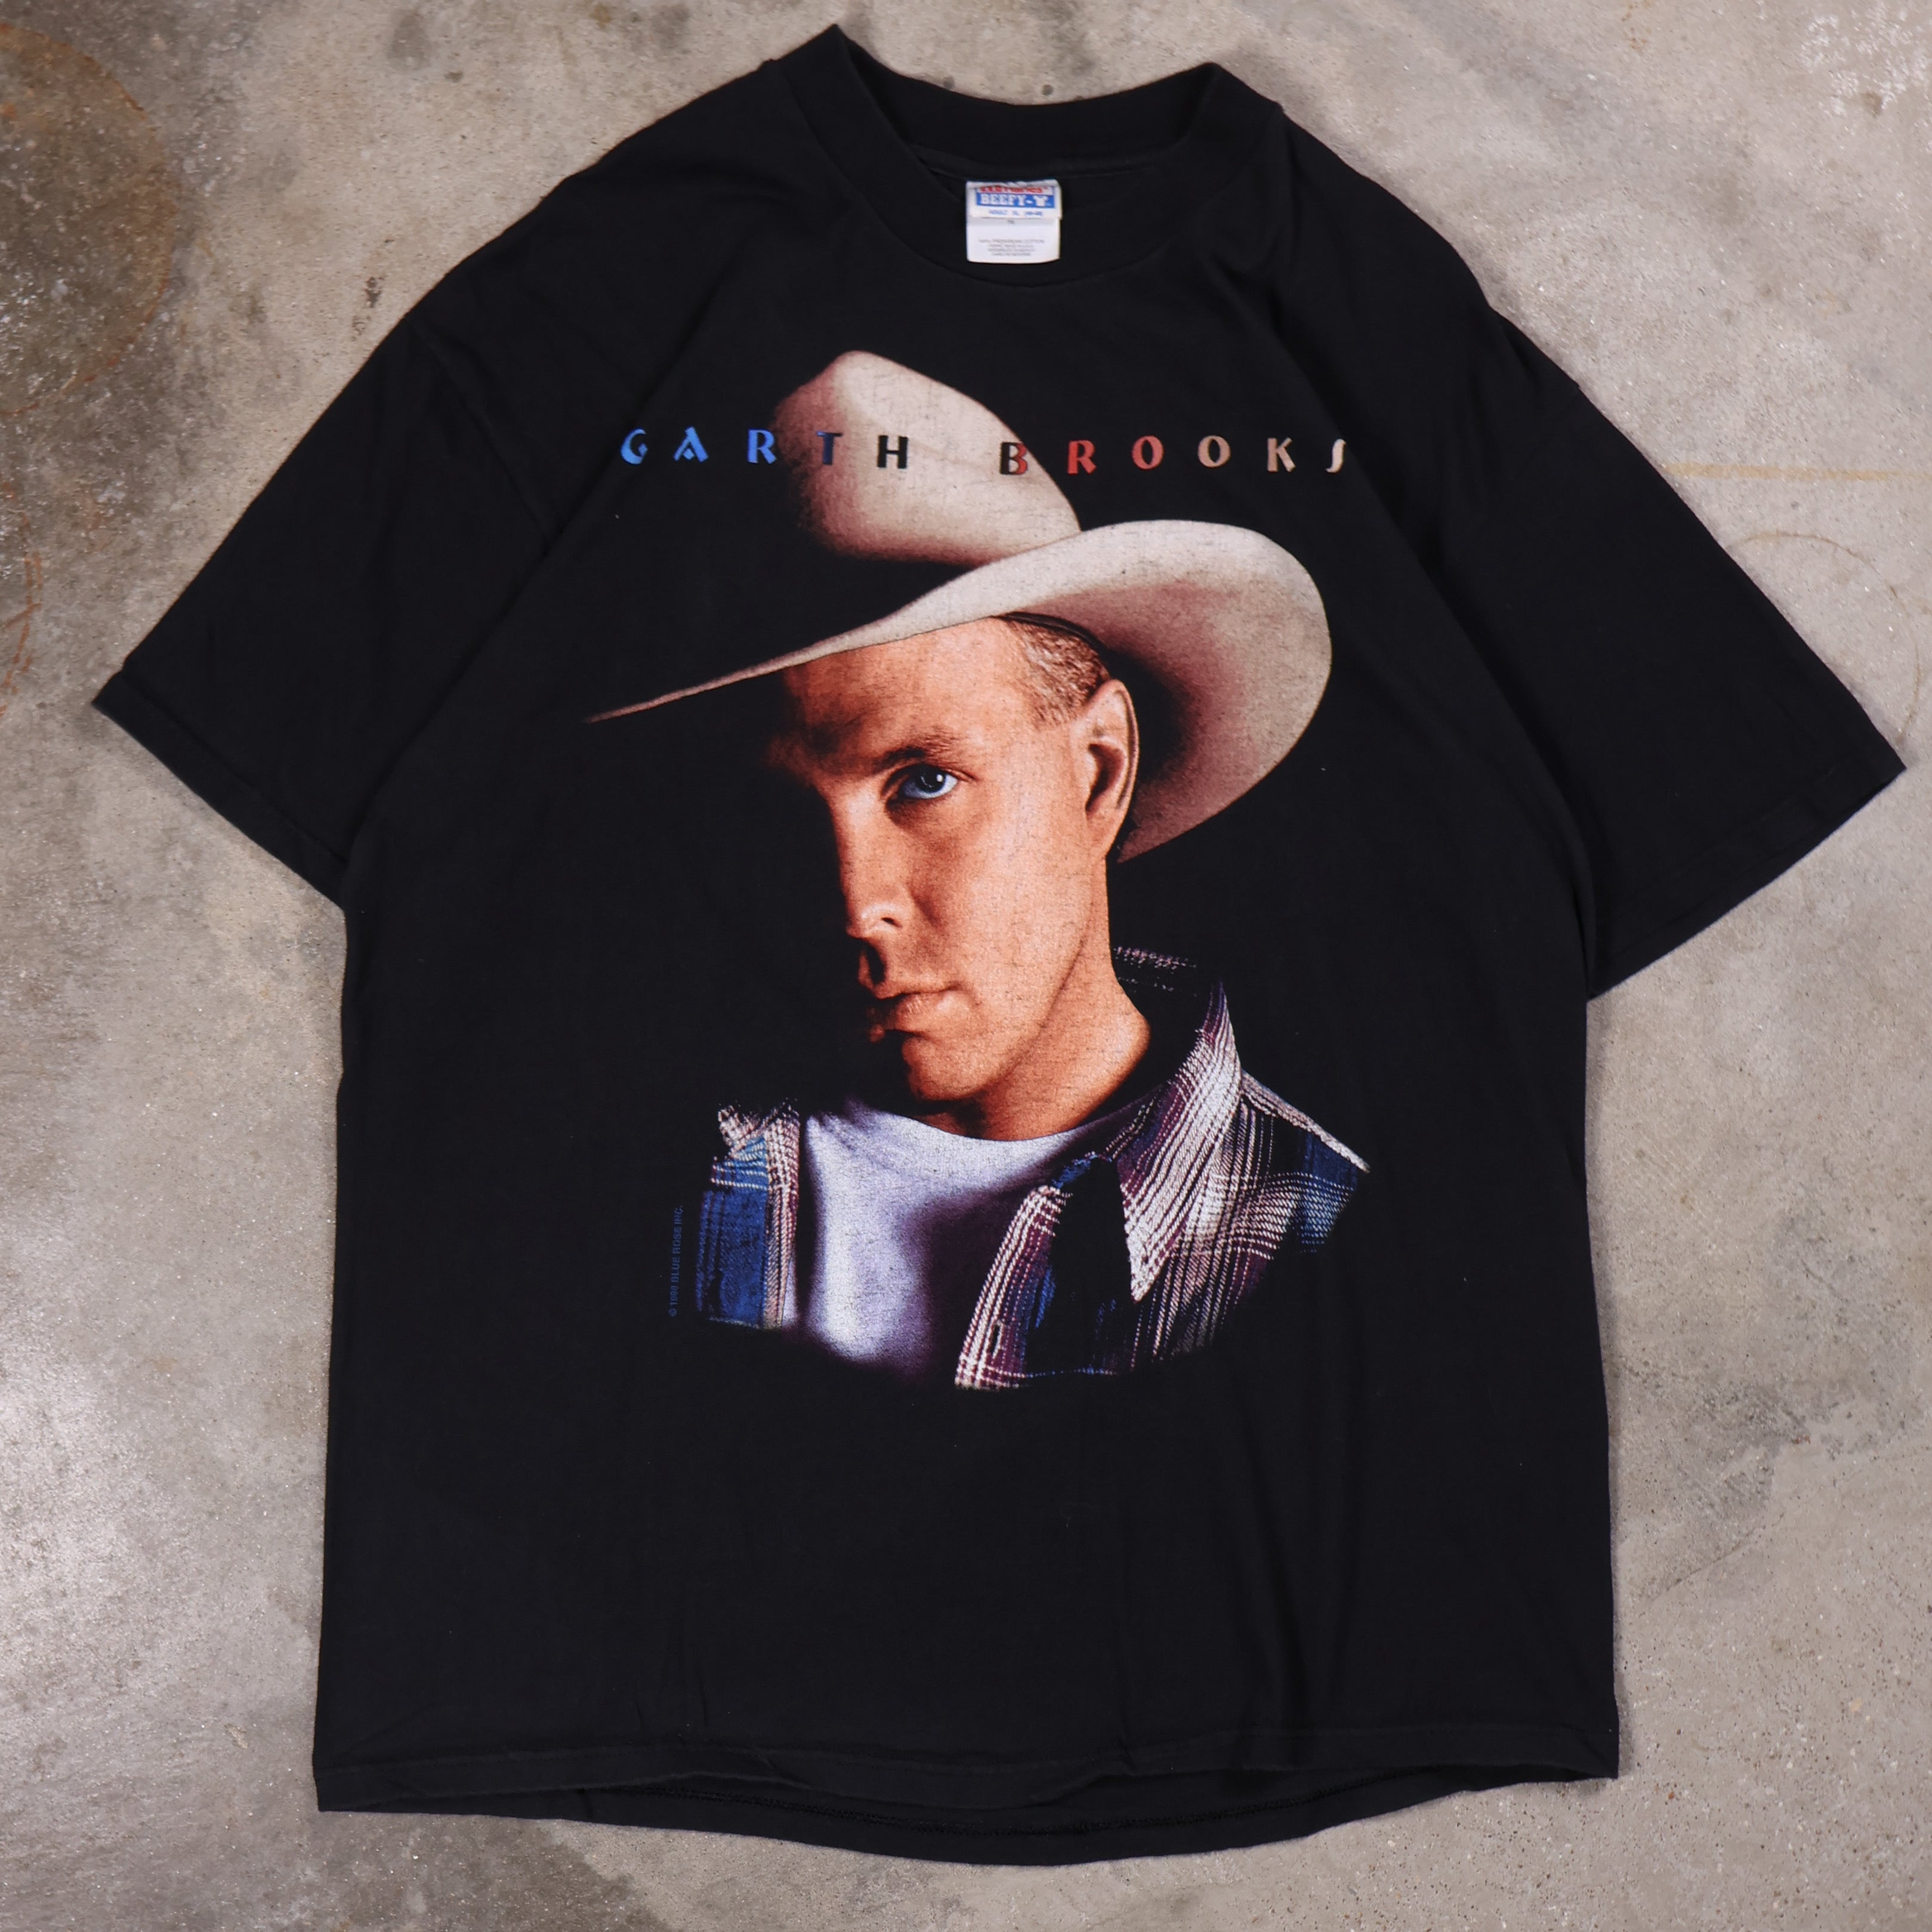 Garth Brooks Tour T-Shirt 1998 (XL)